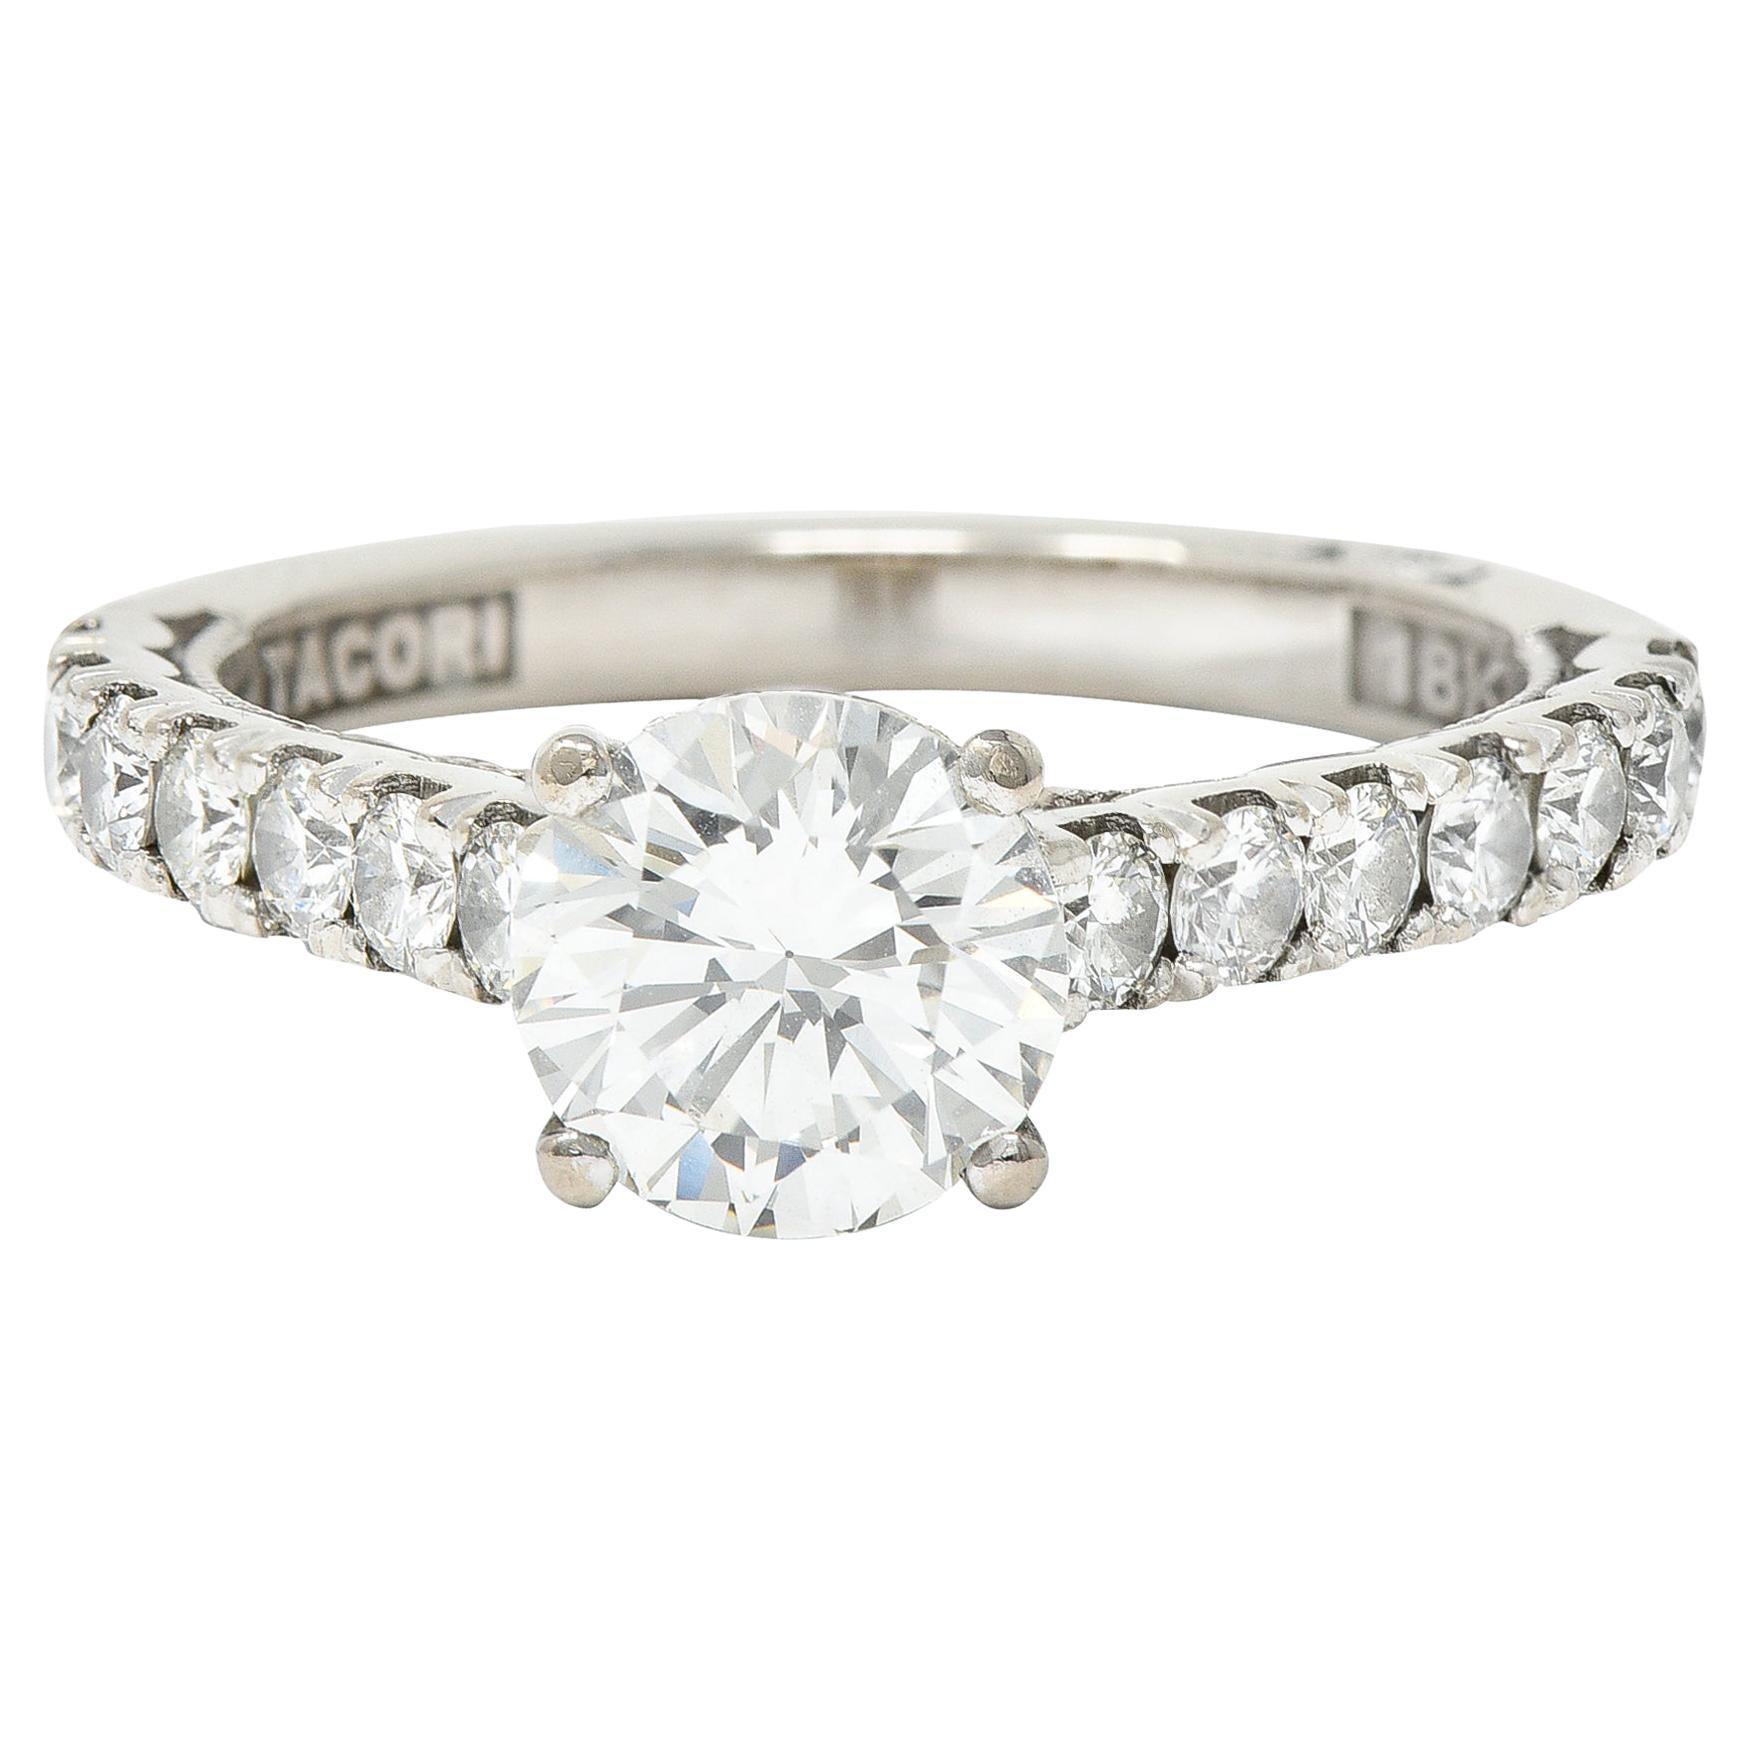 Tacori 1.71 Carats Diamond 18 Karat White Gold Engagement Ring GIA